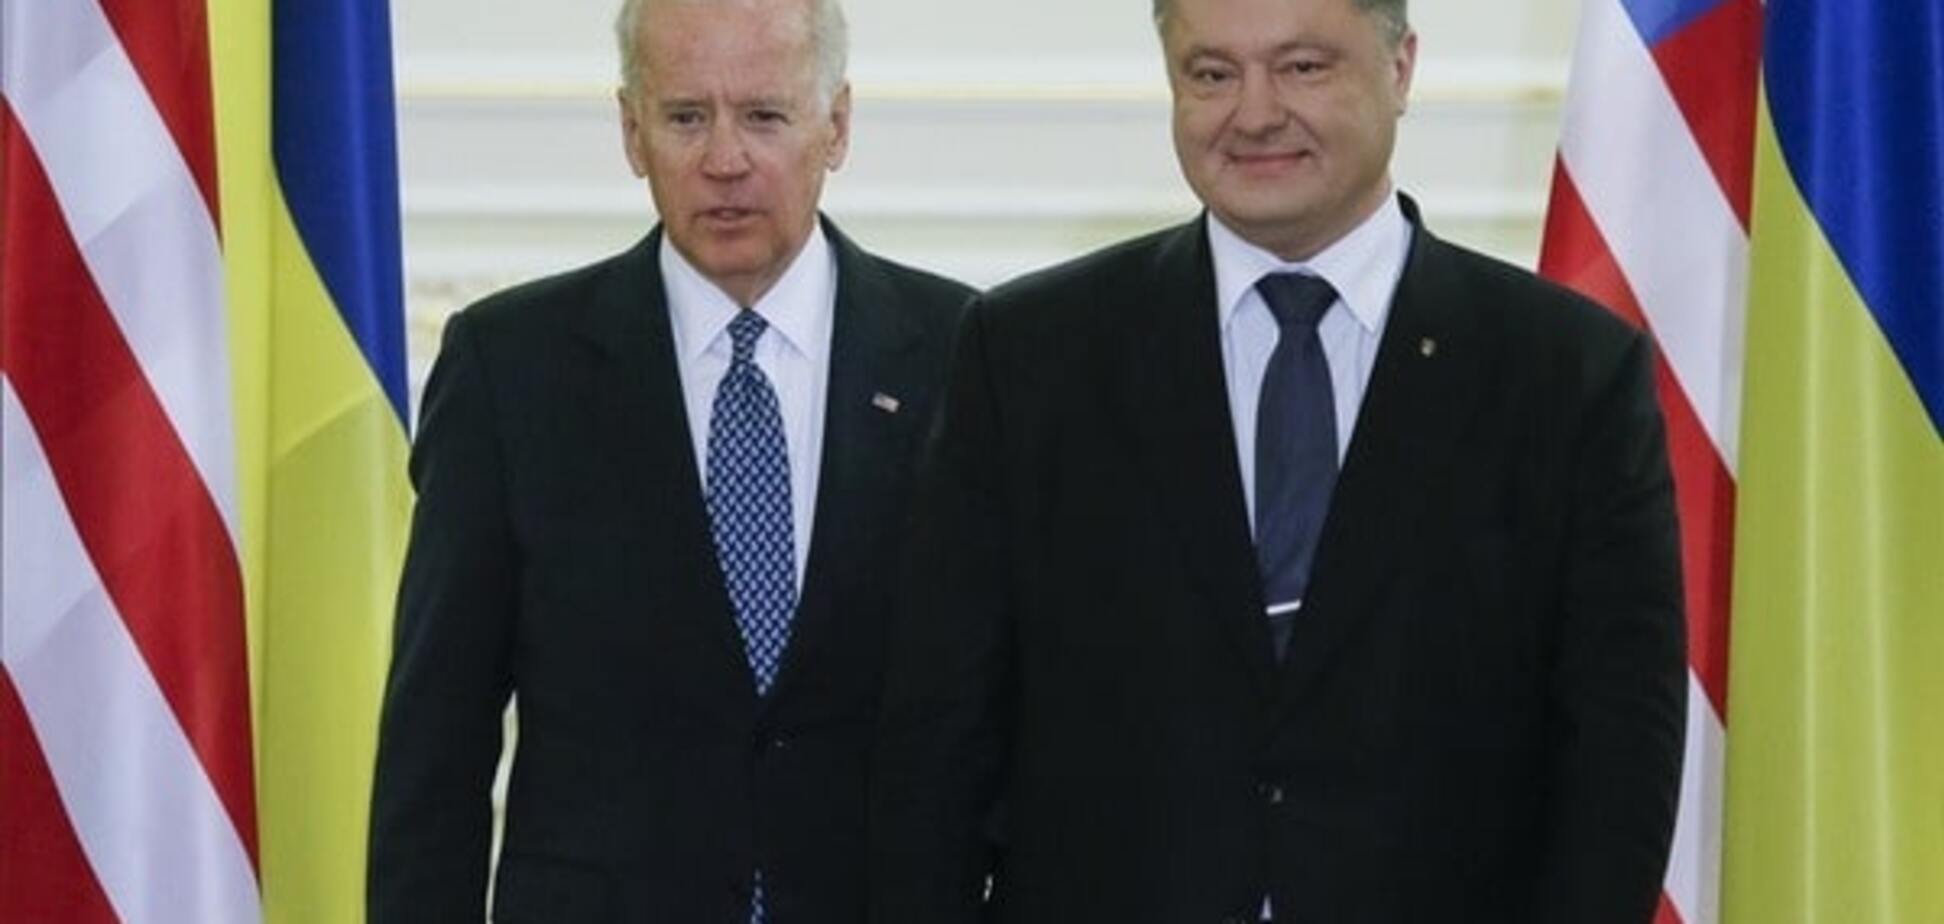 Обзавидовались: в России съязвили из-за визита Байдена в Украину